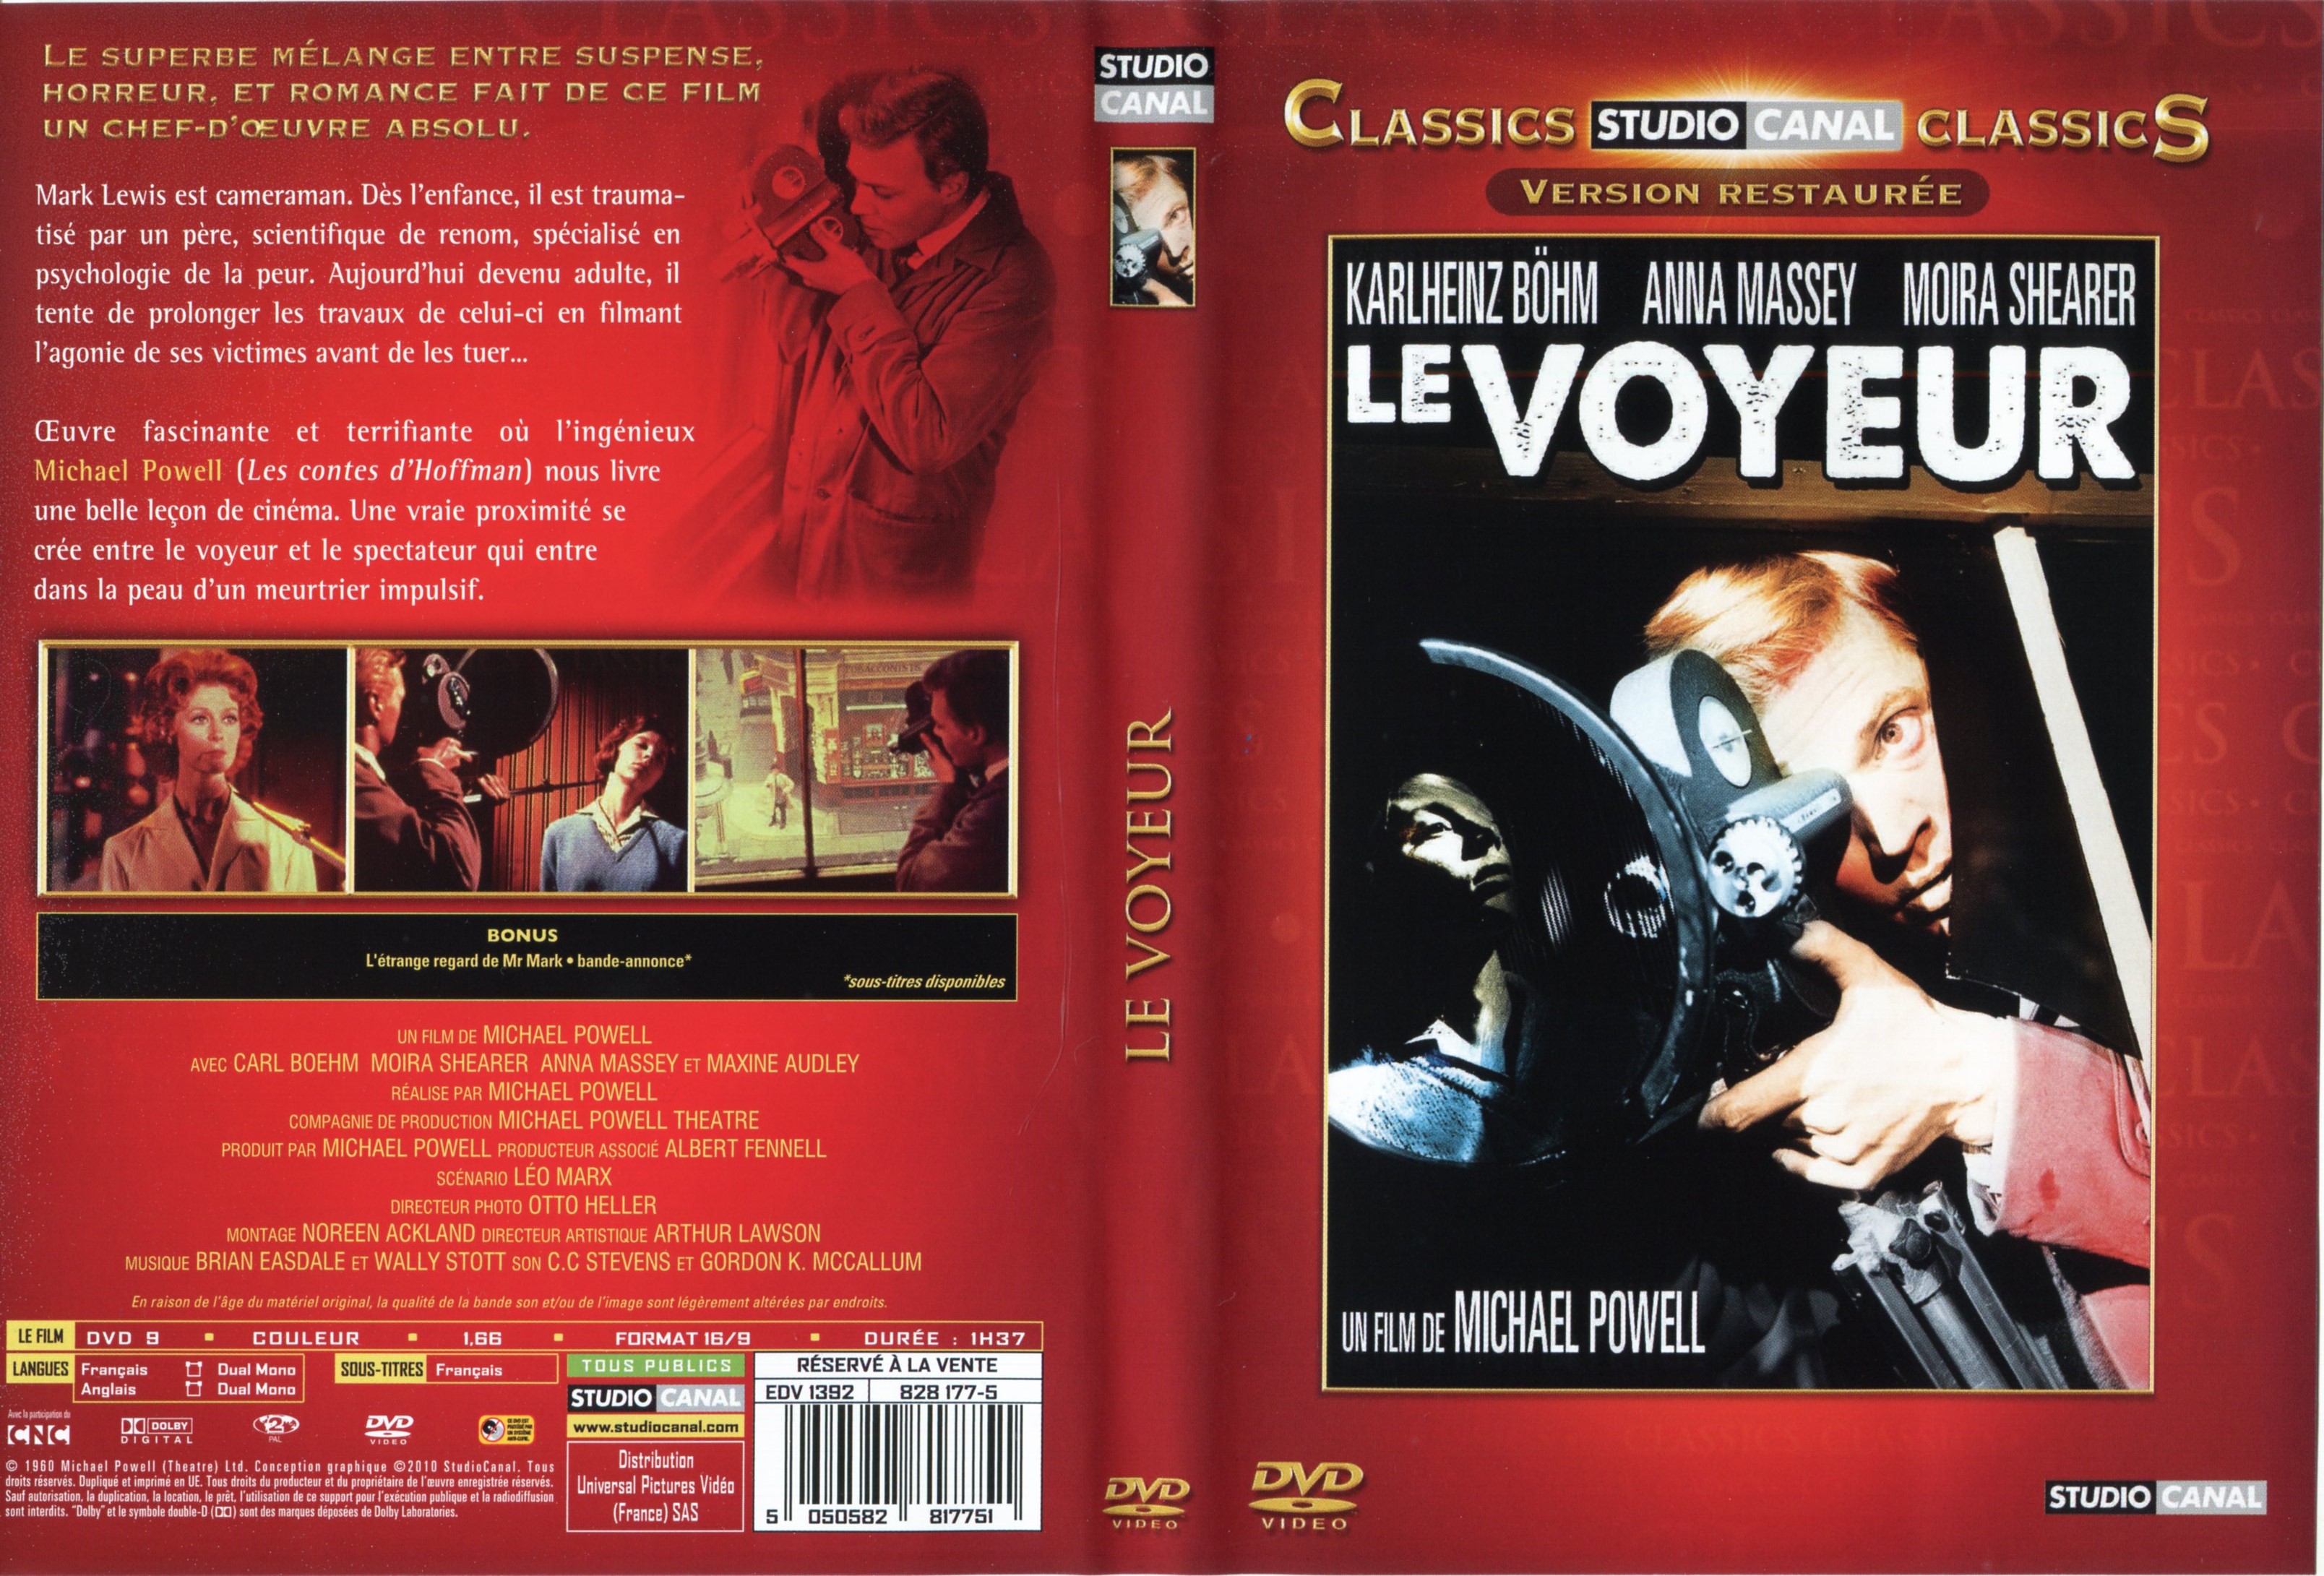 Jaquette DVD Le voyeur v2